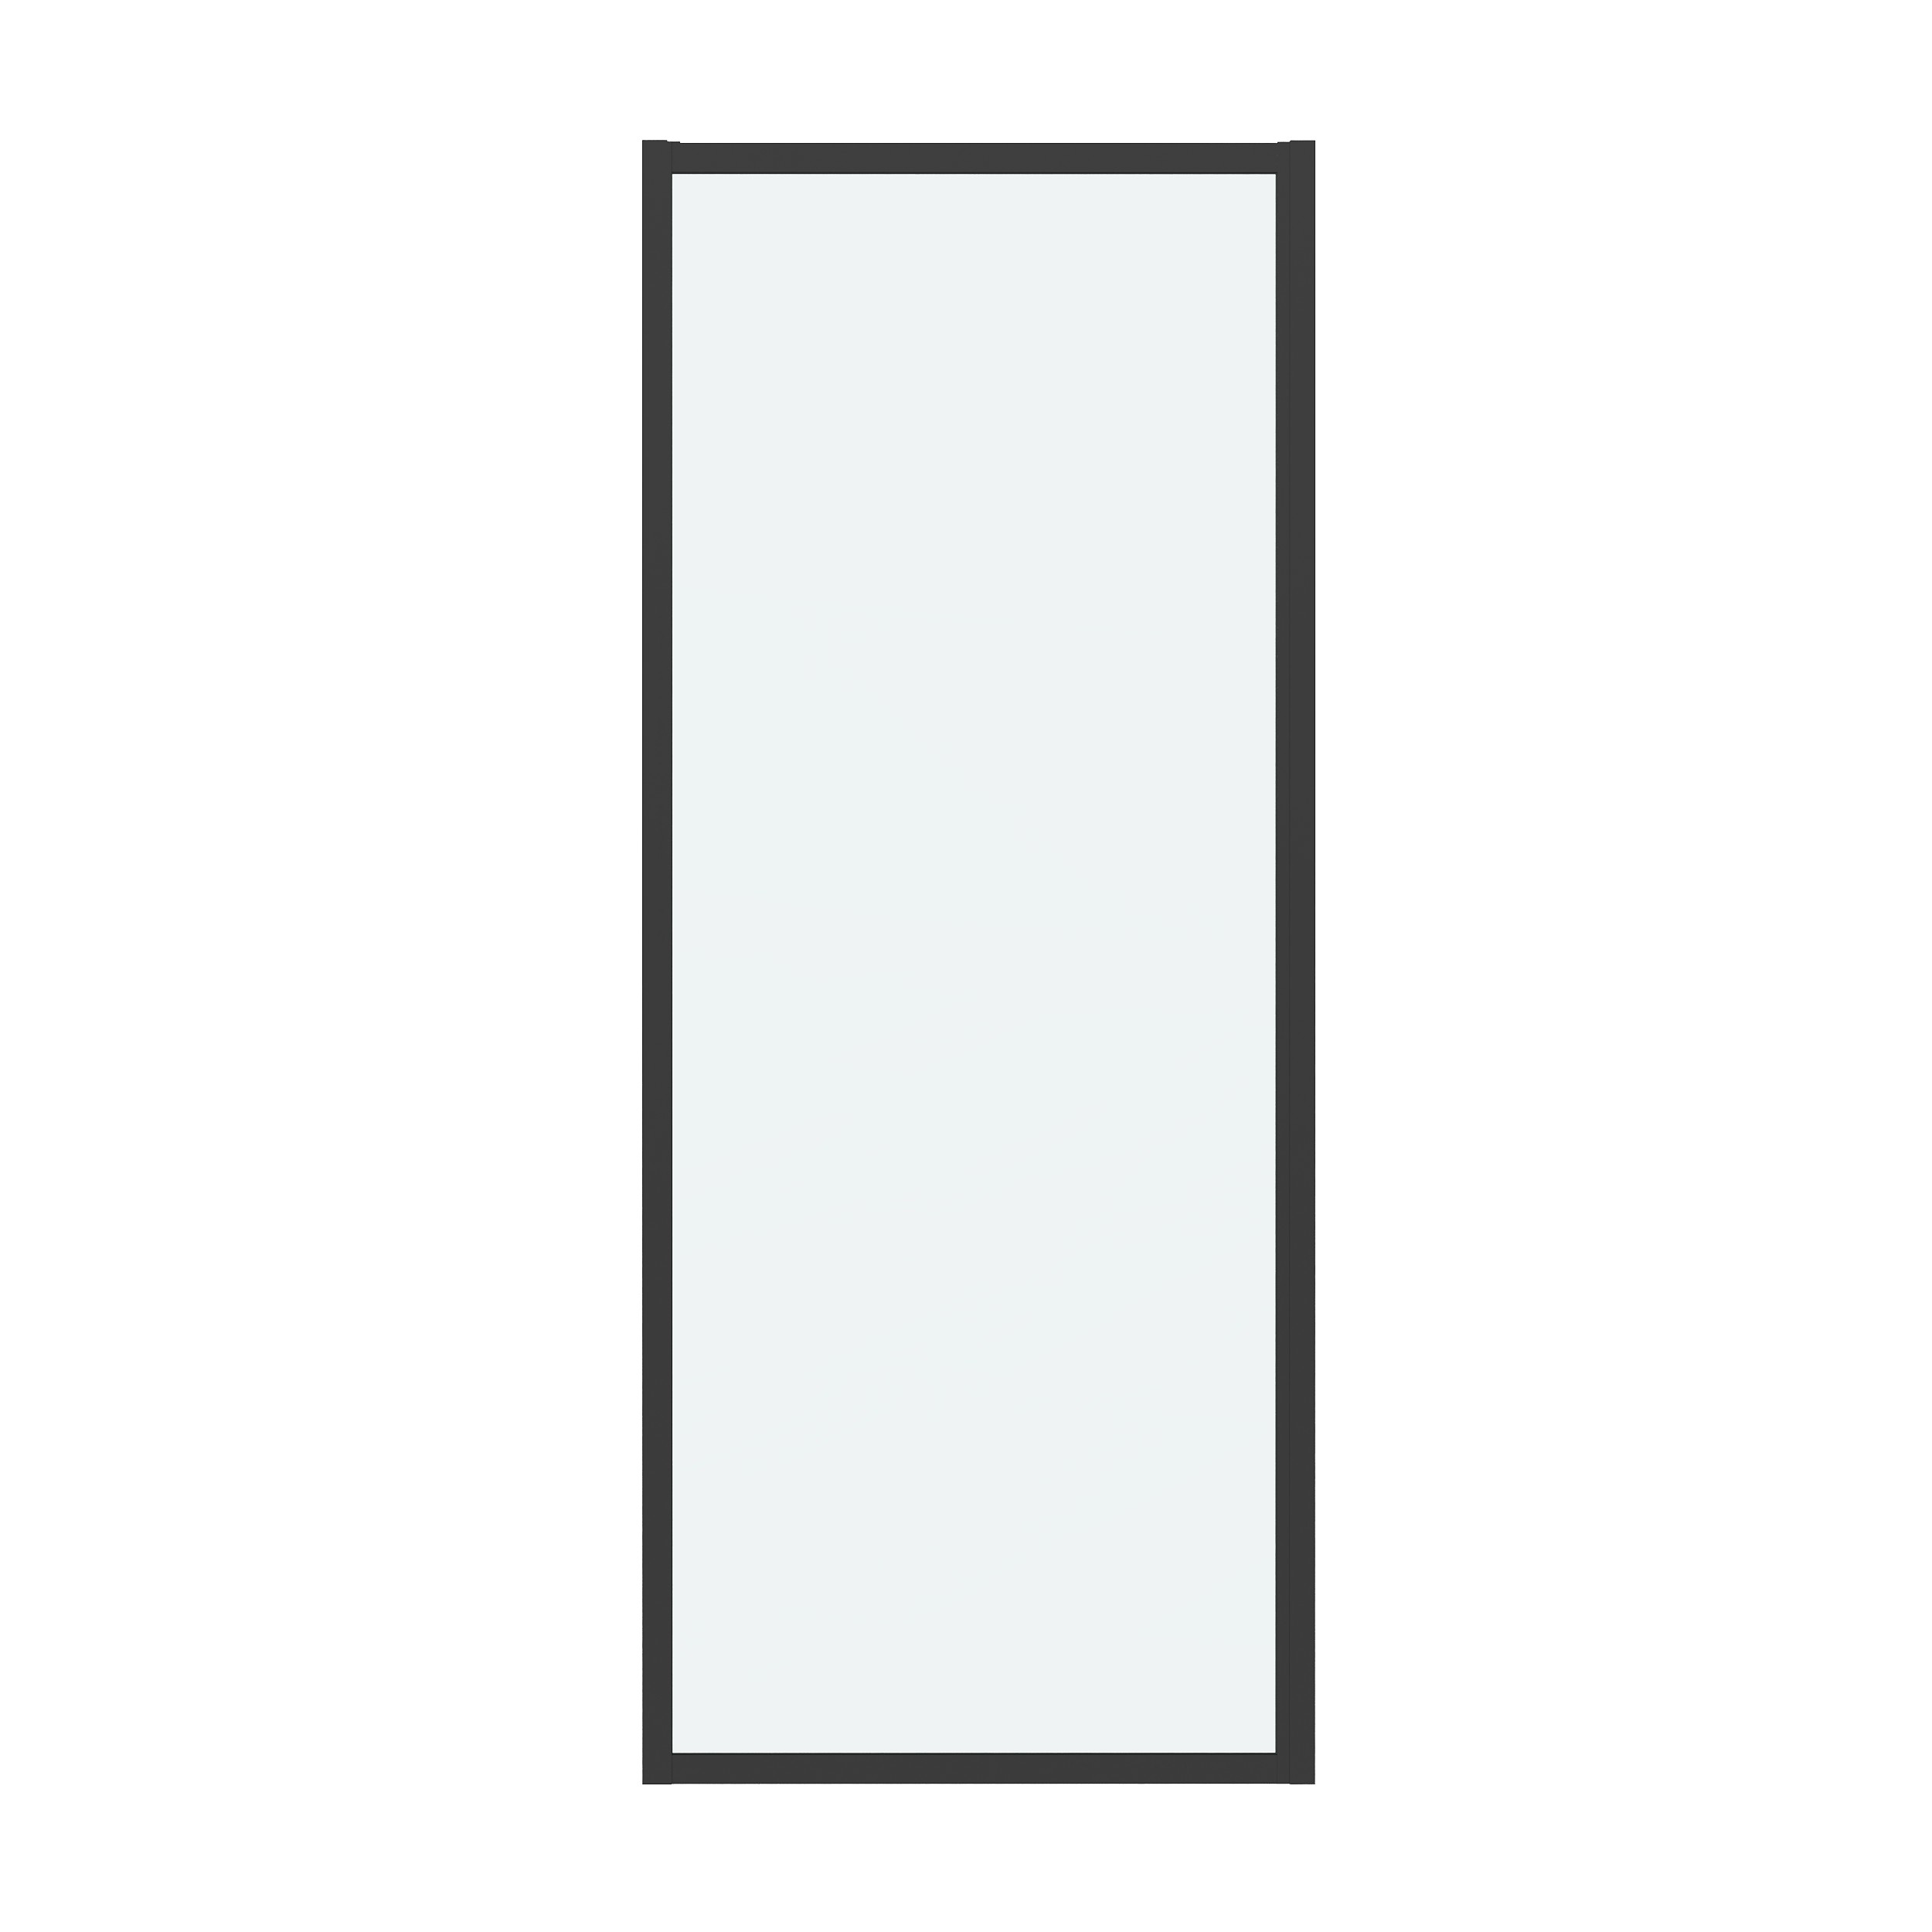 Боковая стенка Grossman Cosmo 80x195 200.K33.02.80.21.00 стекло прозрачное, профиль черный матовый